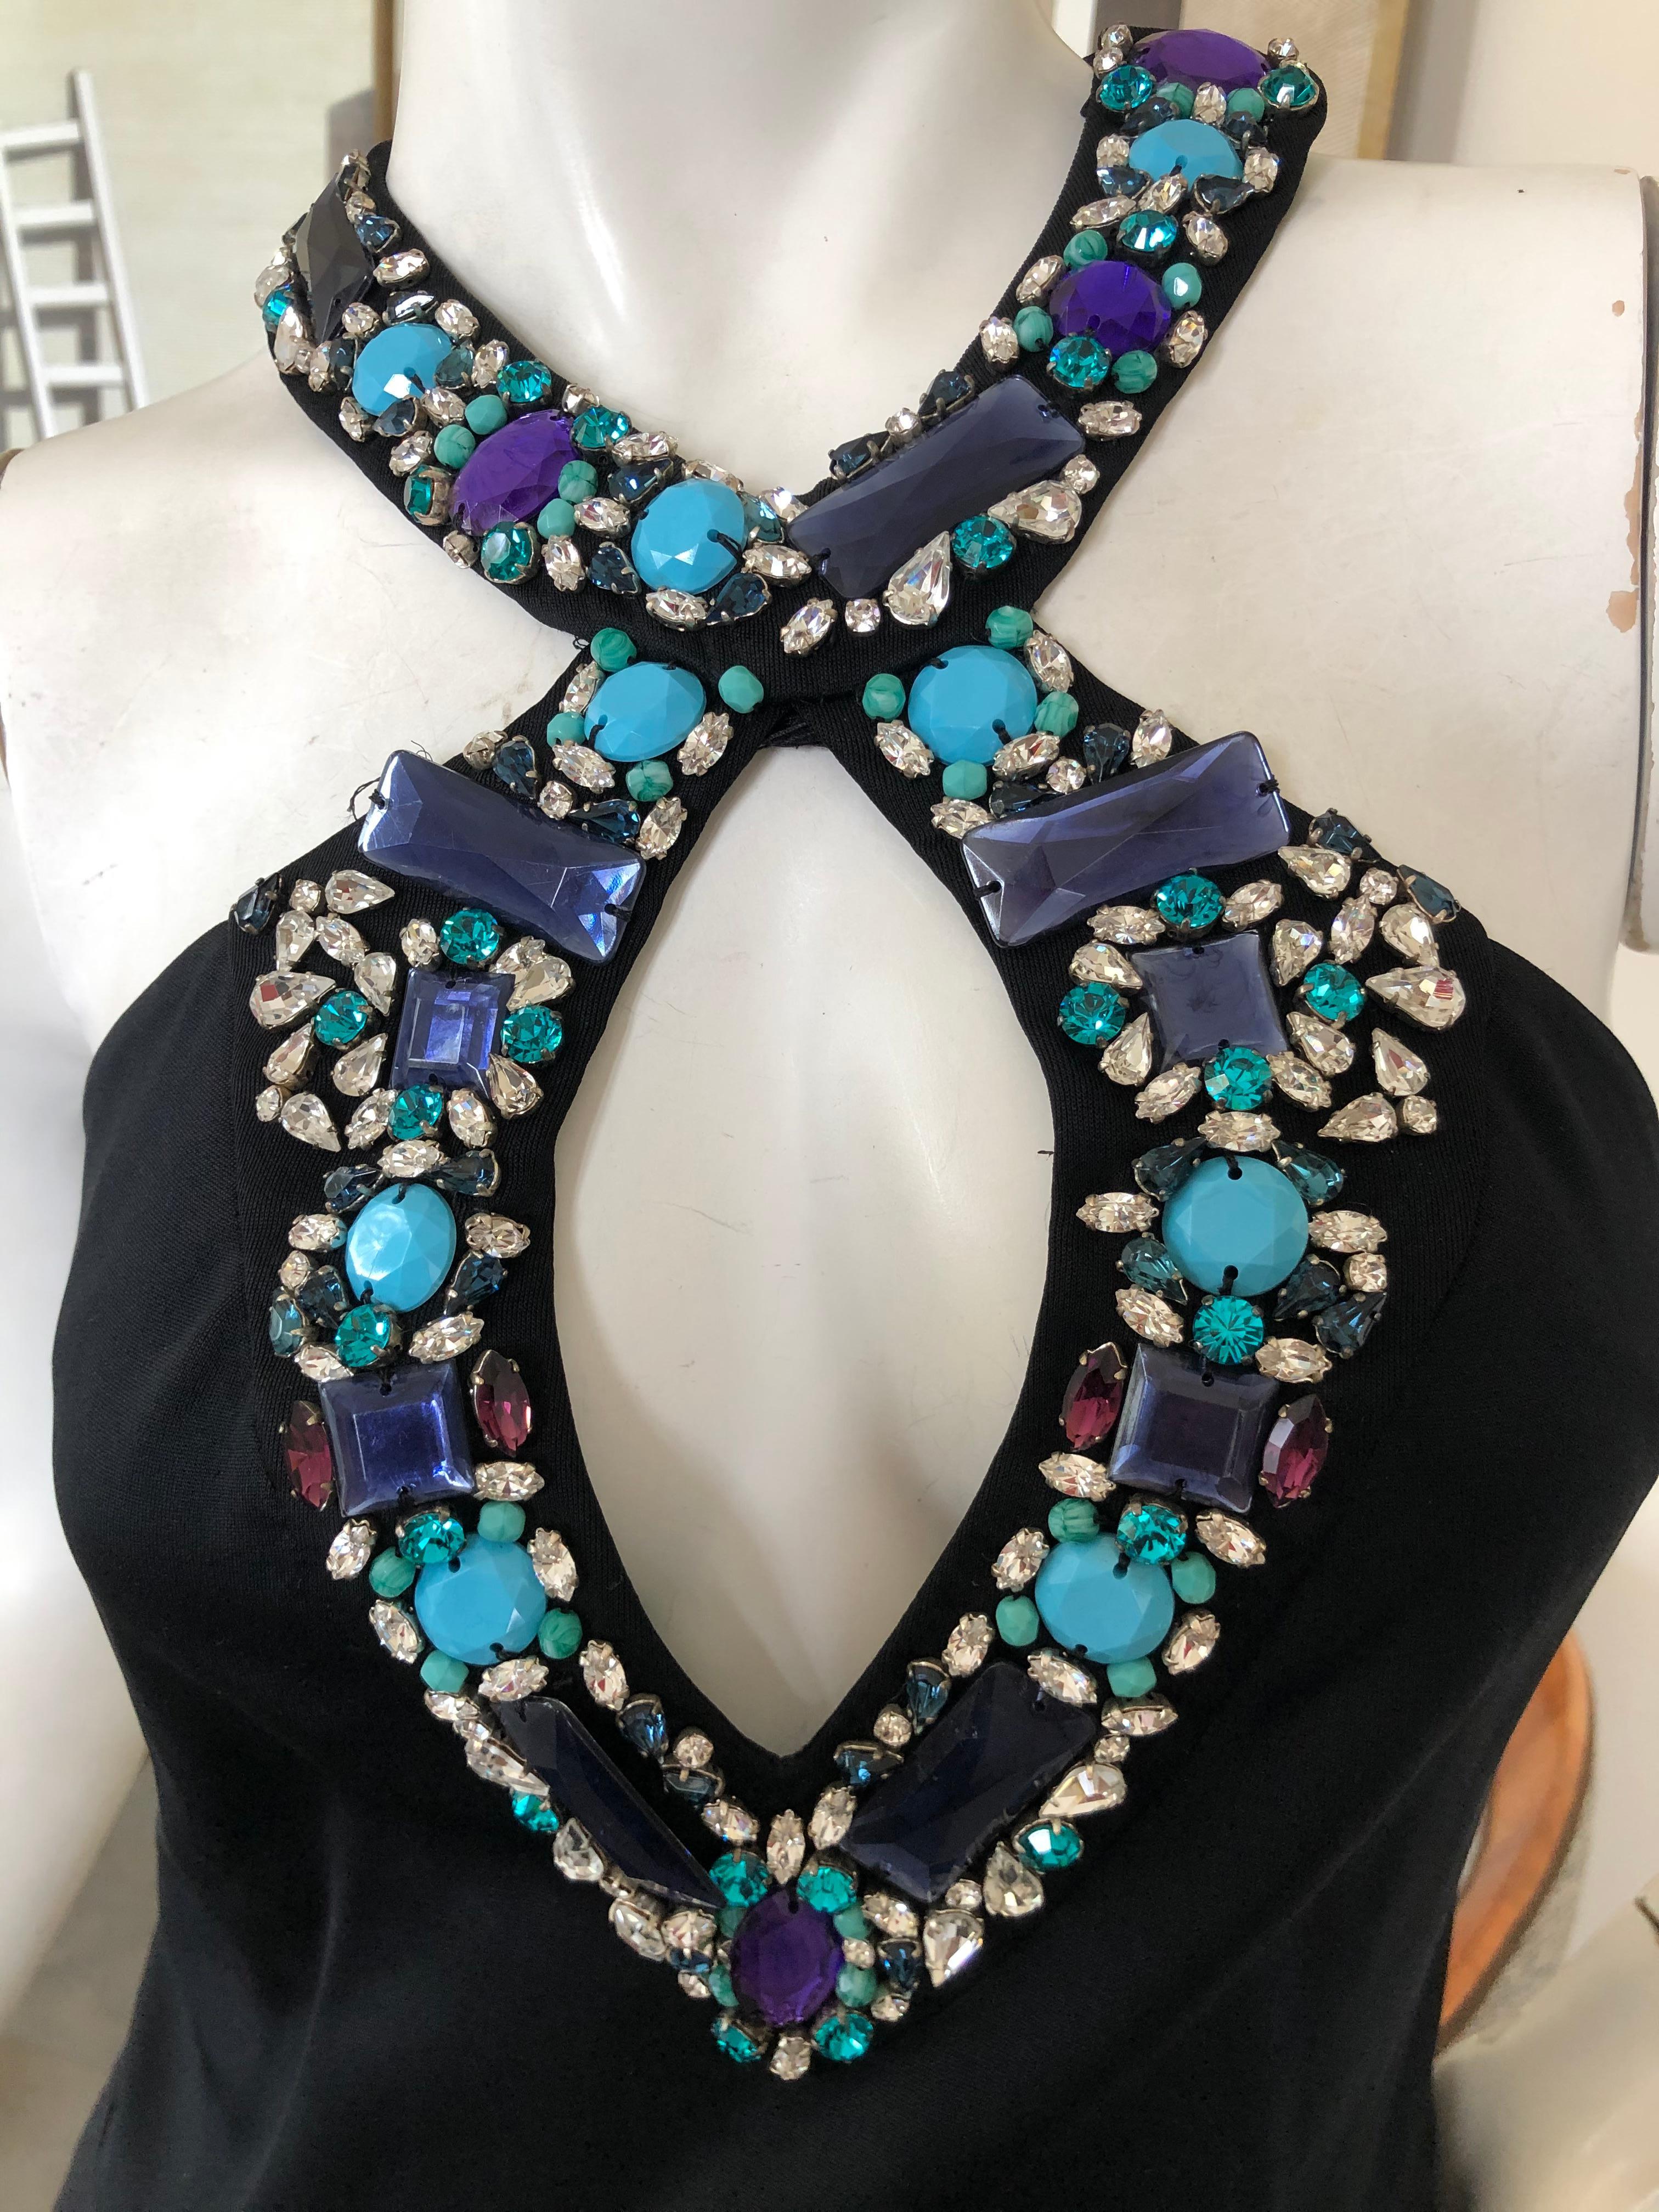 Emilio Pucci Lacroix Era Little Black Dress w Gobsmacking Jewel Embellishments For Sale 1